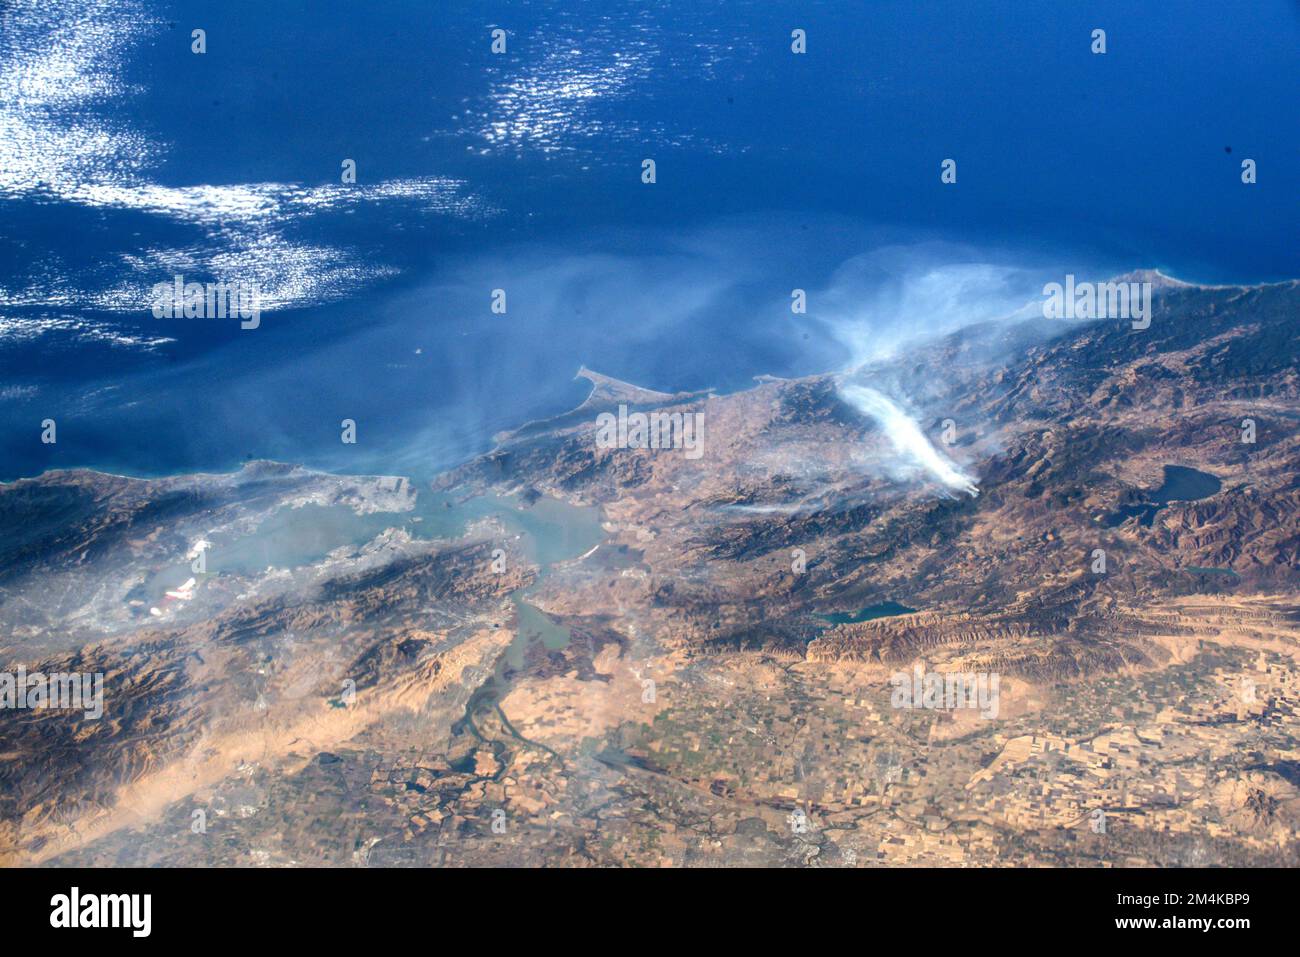 Luftaufnahme von Kaliforniens Waldbränden von der International Space Station. Digital optimiert. Bildelemente von der NASA Stockfoto